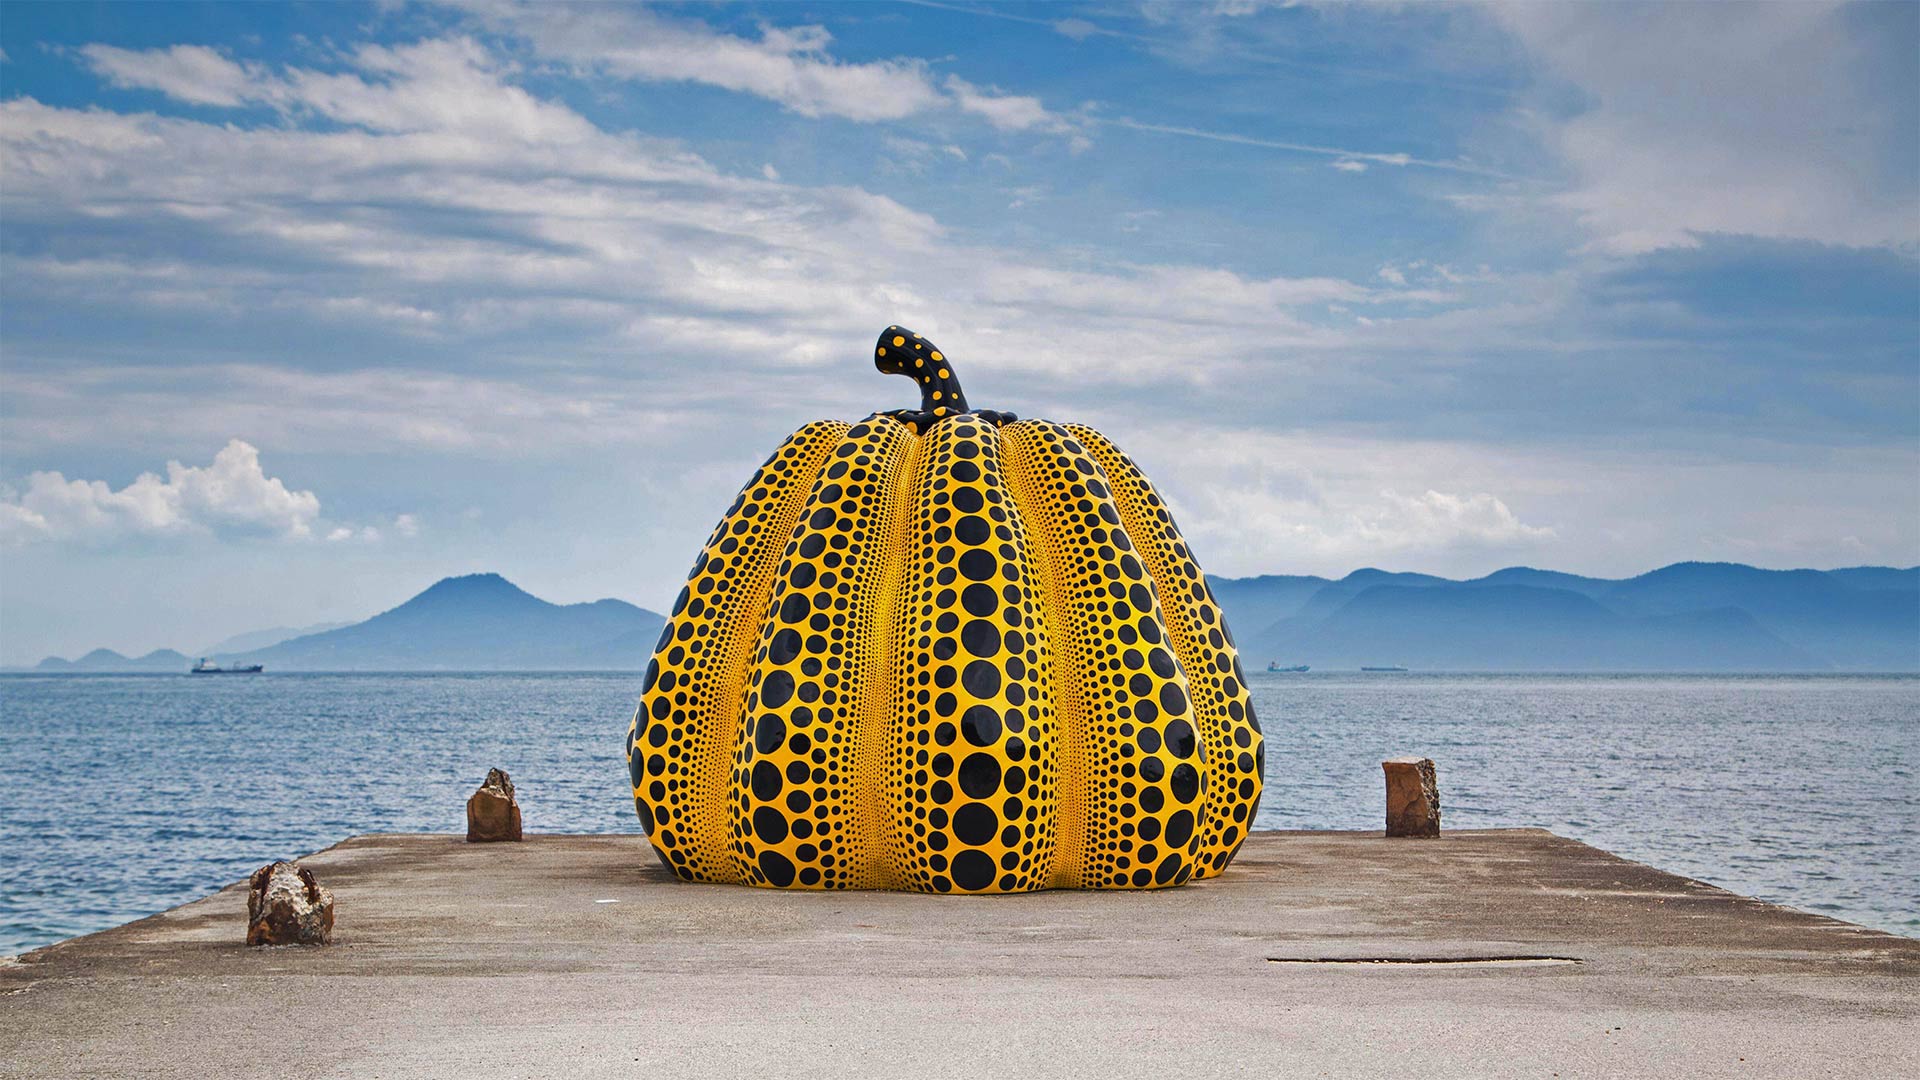 Yayoi Kusama's 'Pumpkin' artwork on Naoshima Island, Japan, in August 2018 - Wirestock/Alamy)